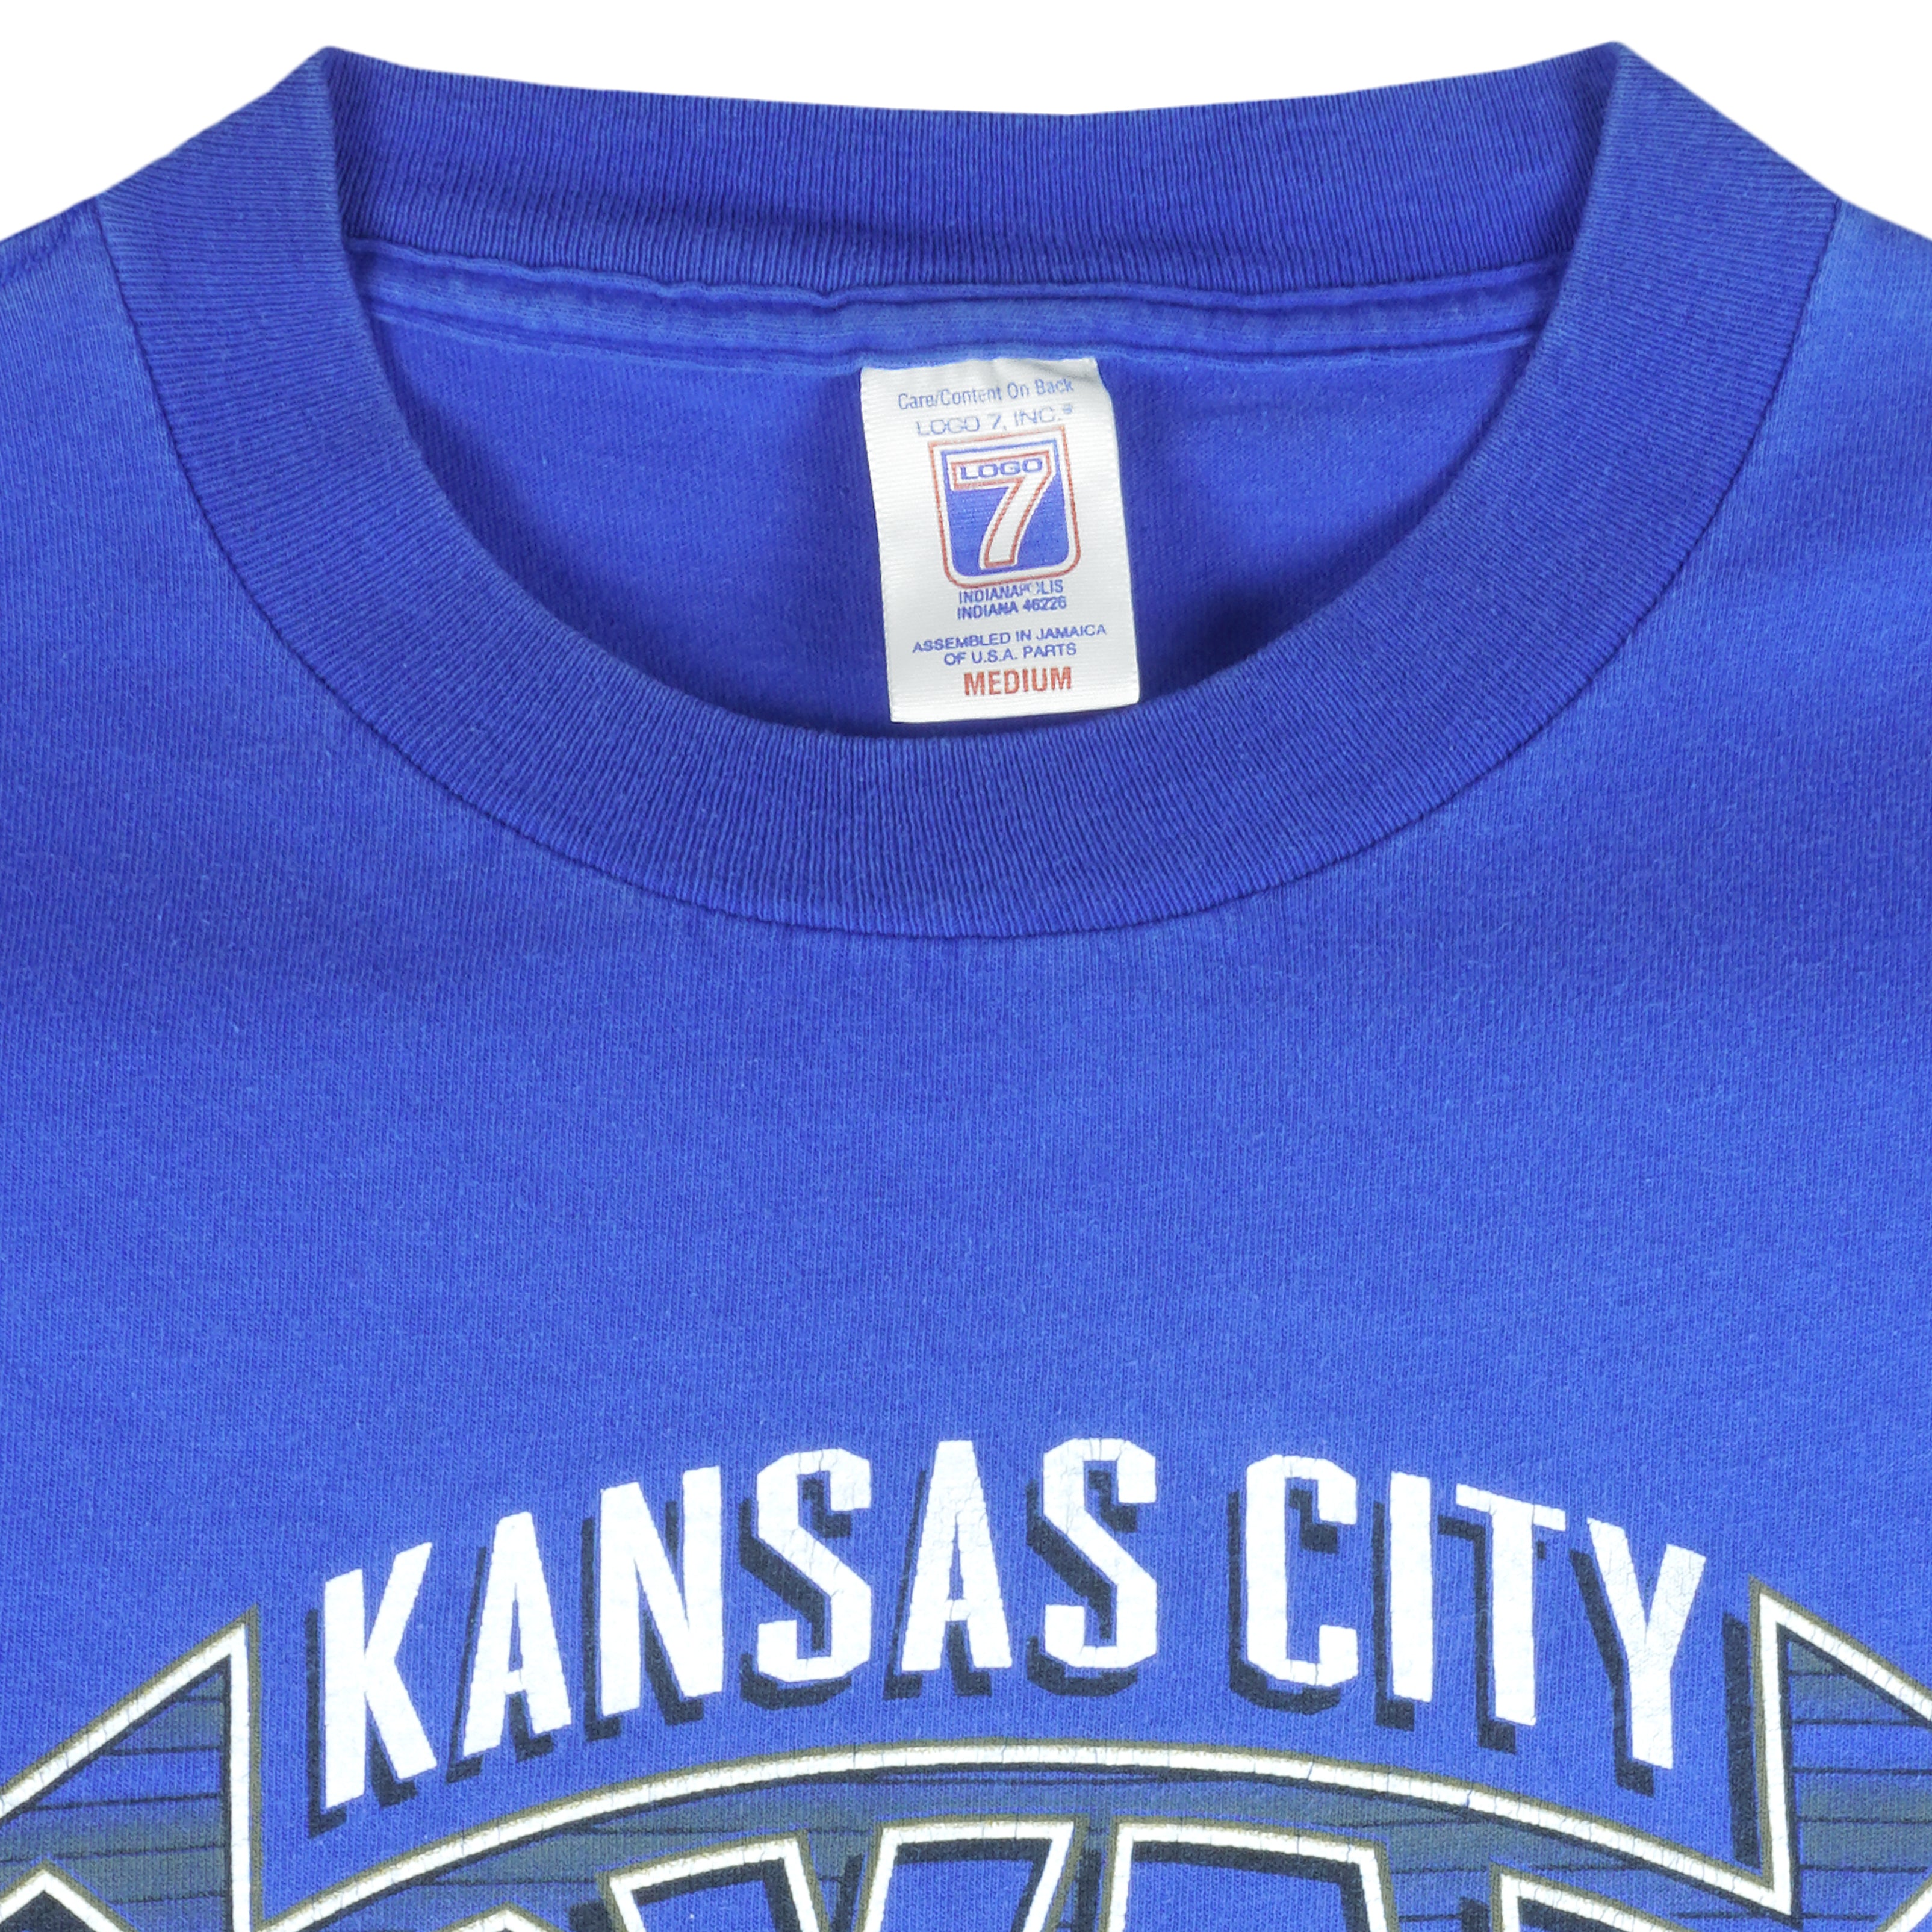 Kansas City Royals Team Stitch Baseball Jersey -  Worldwide  Shipping